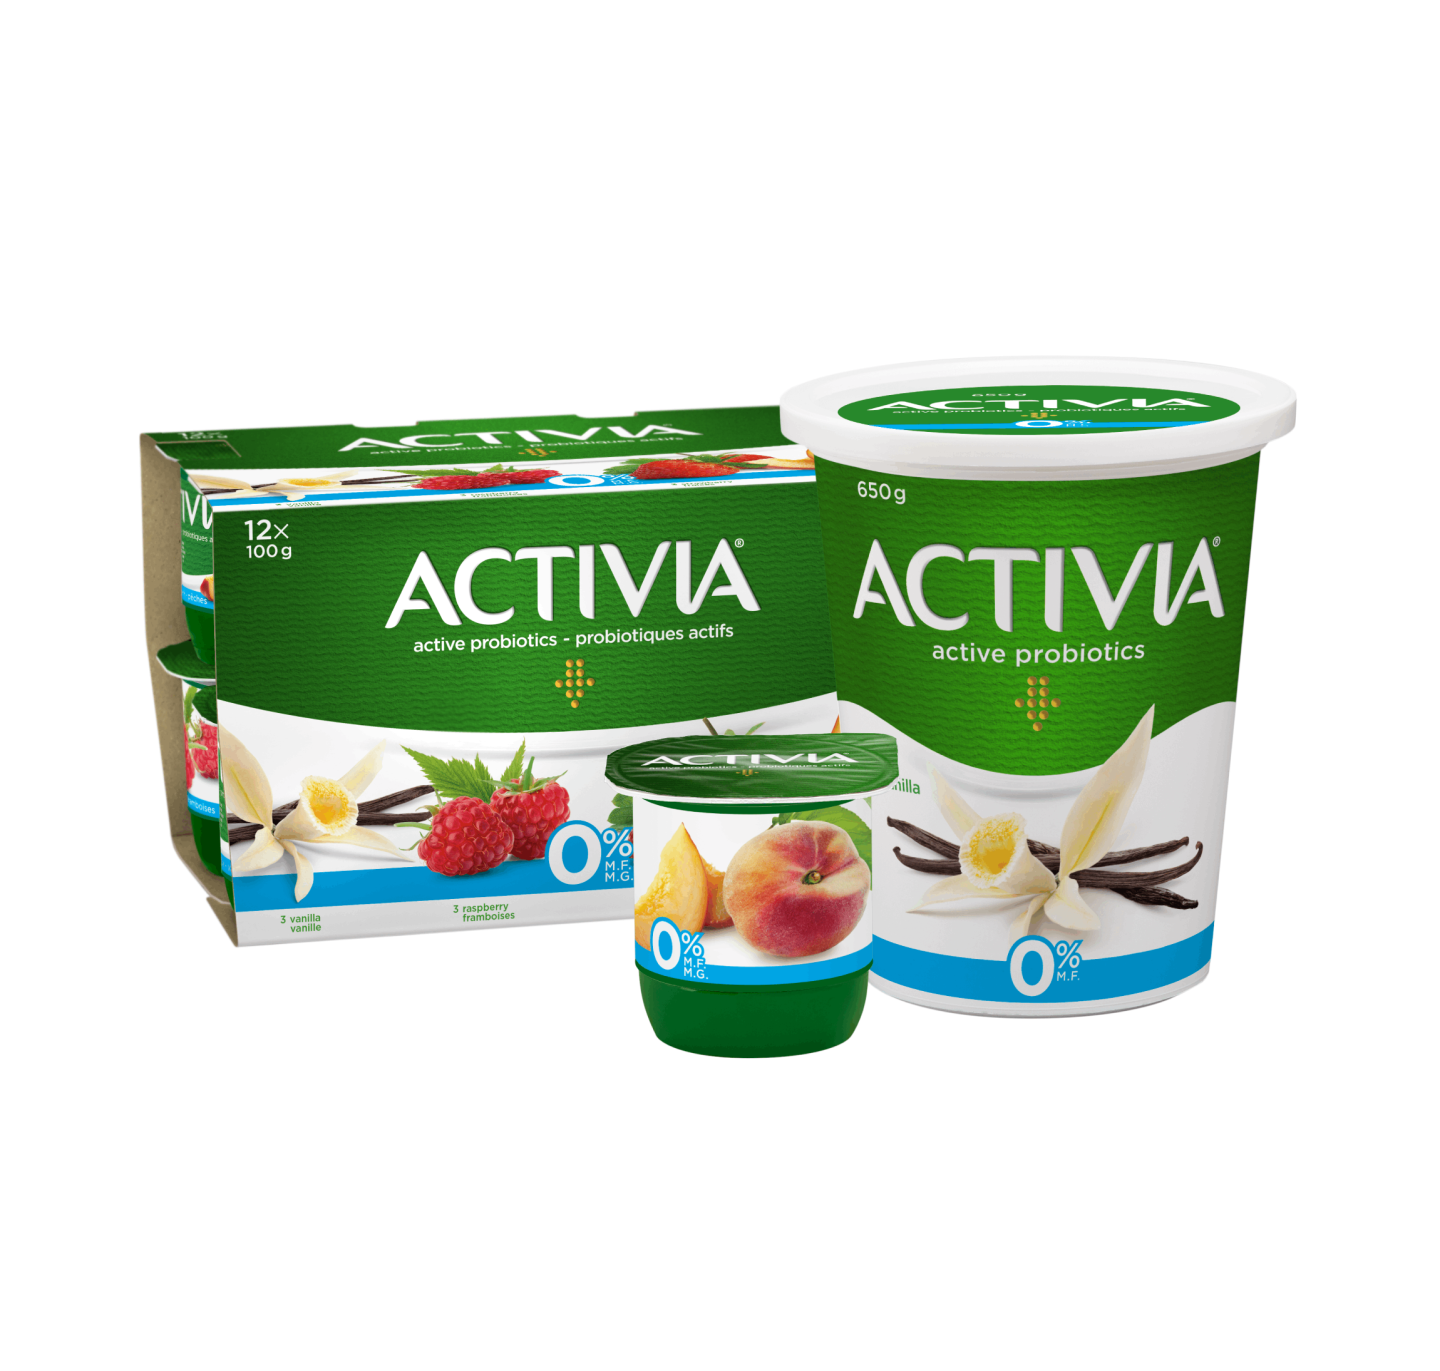 Activia Fat Free Probiotic yogurt